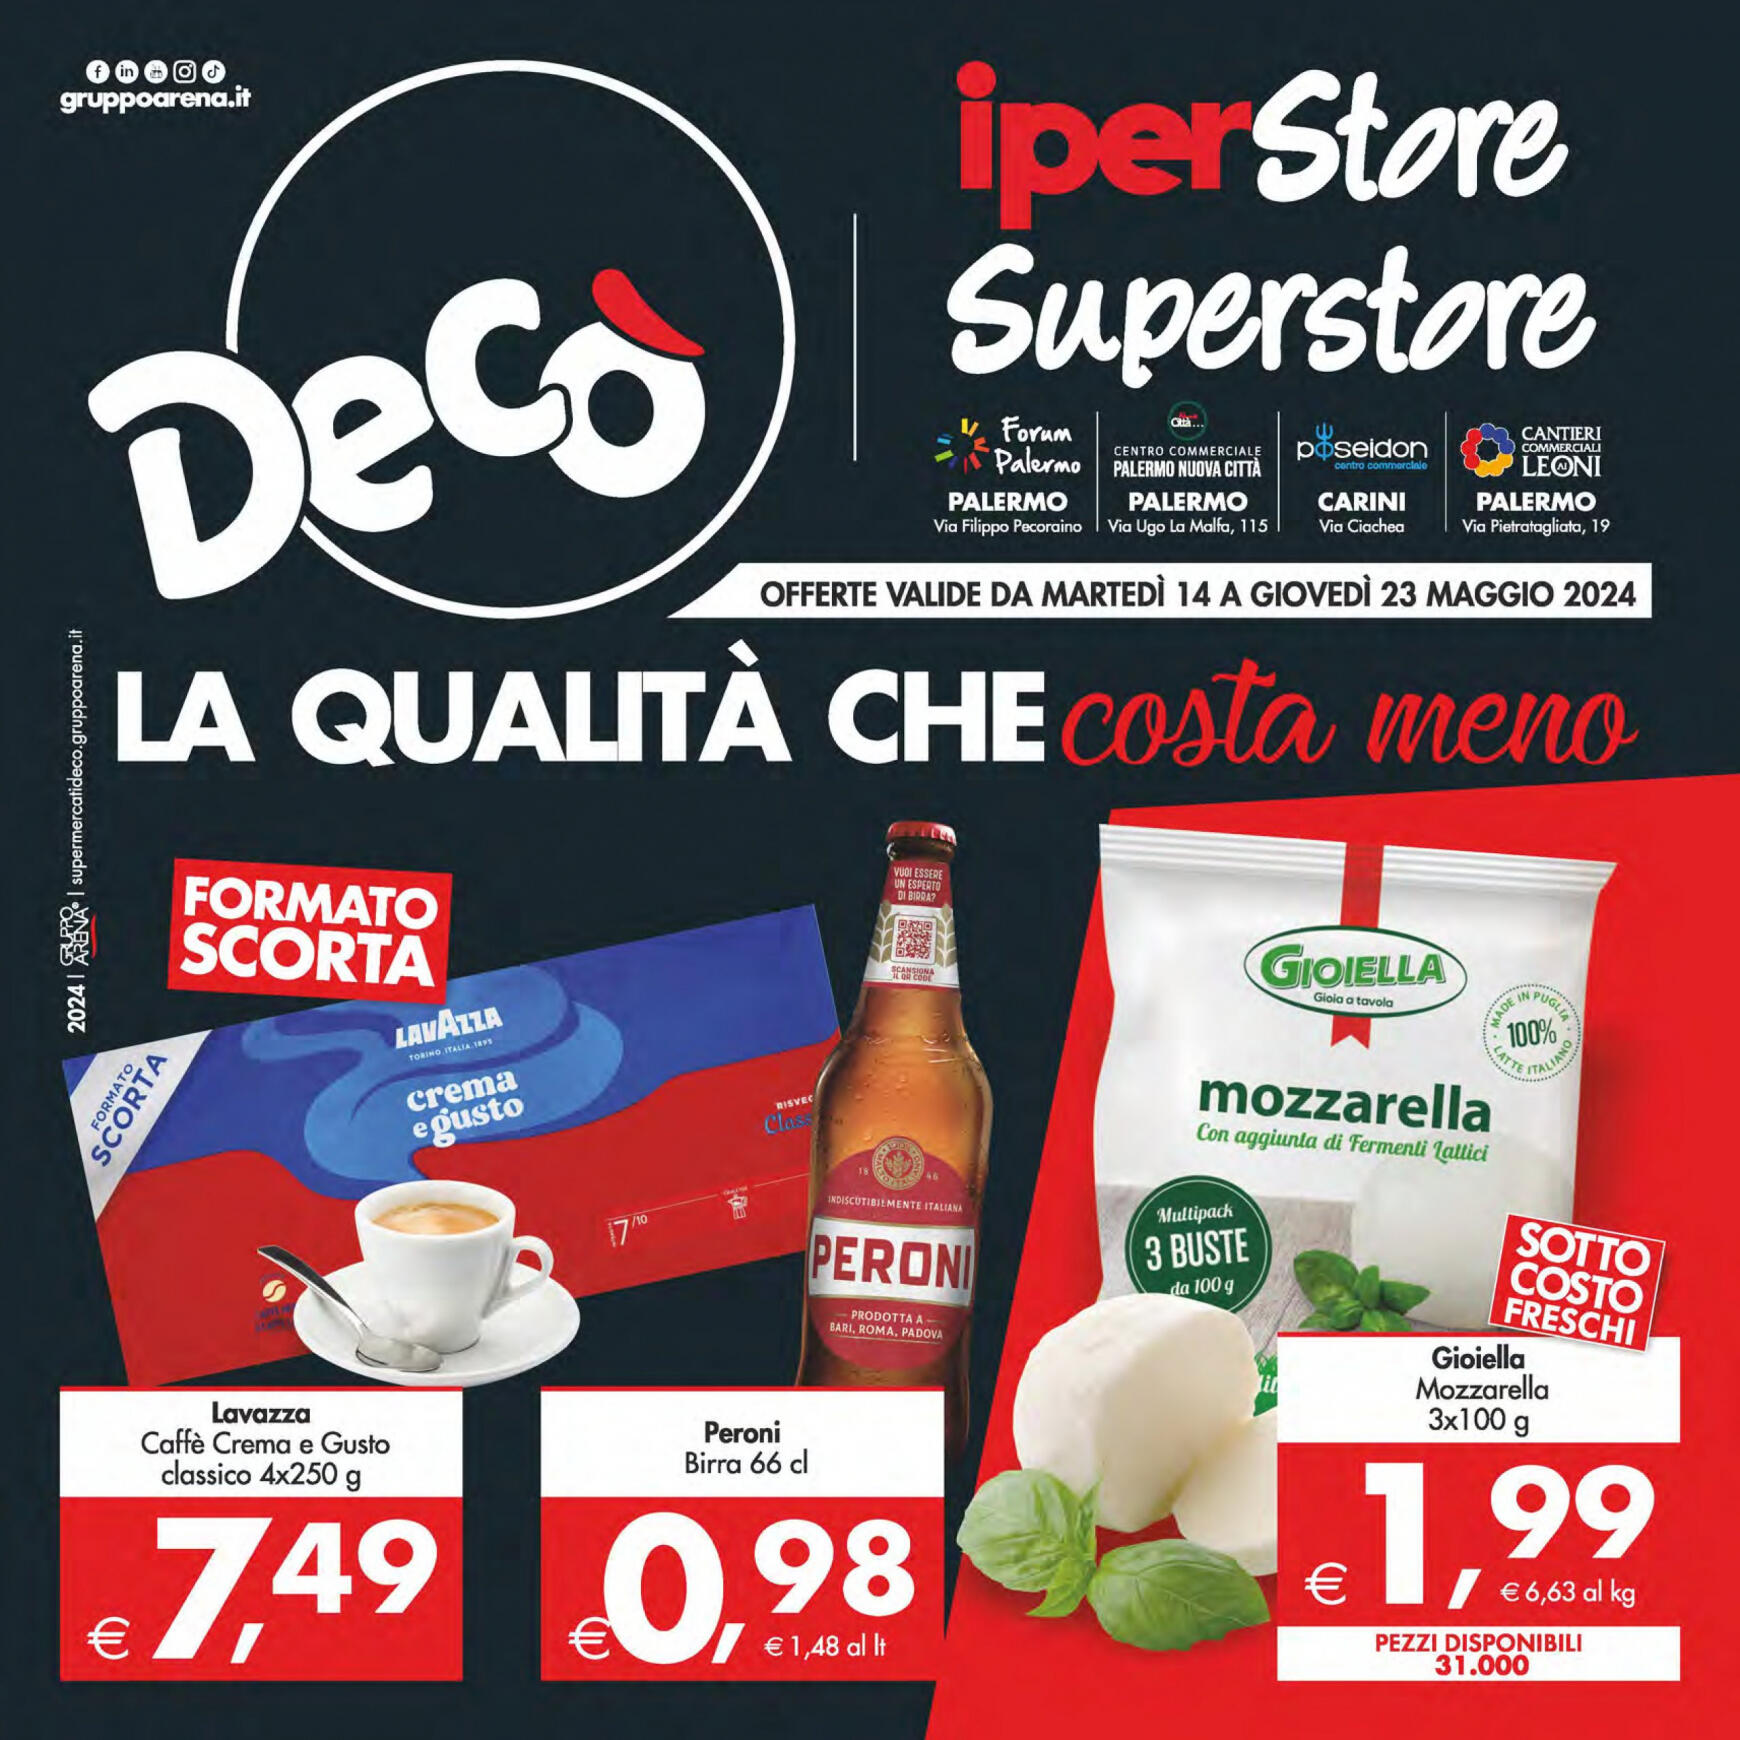 deco - Nuovo volantino Decò - Iperstore/Superstore Deco' Palermo 14.05. - 23.05.